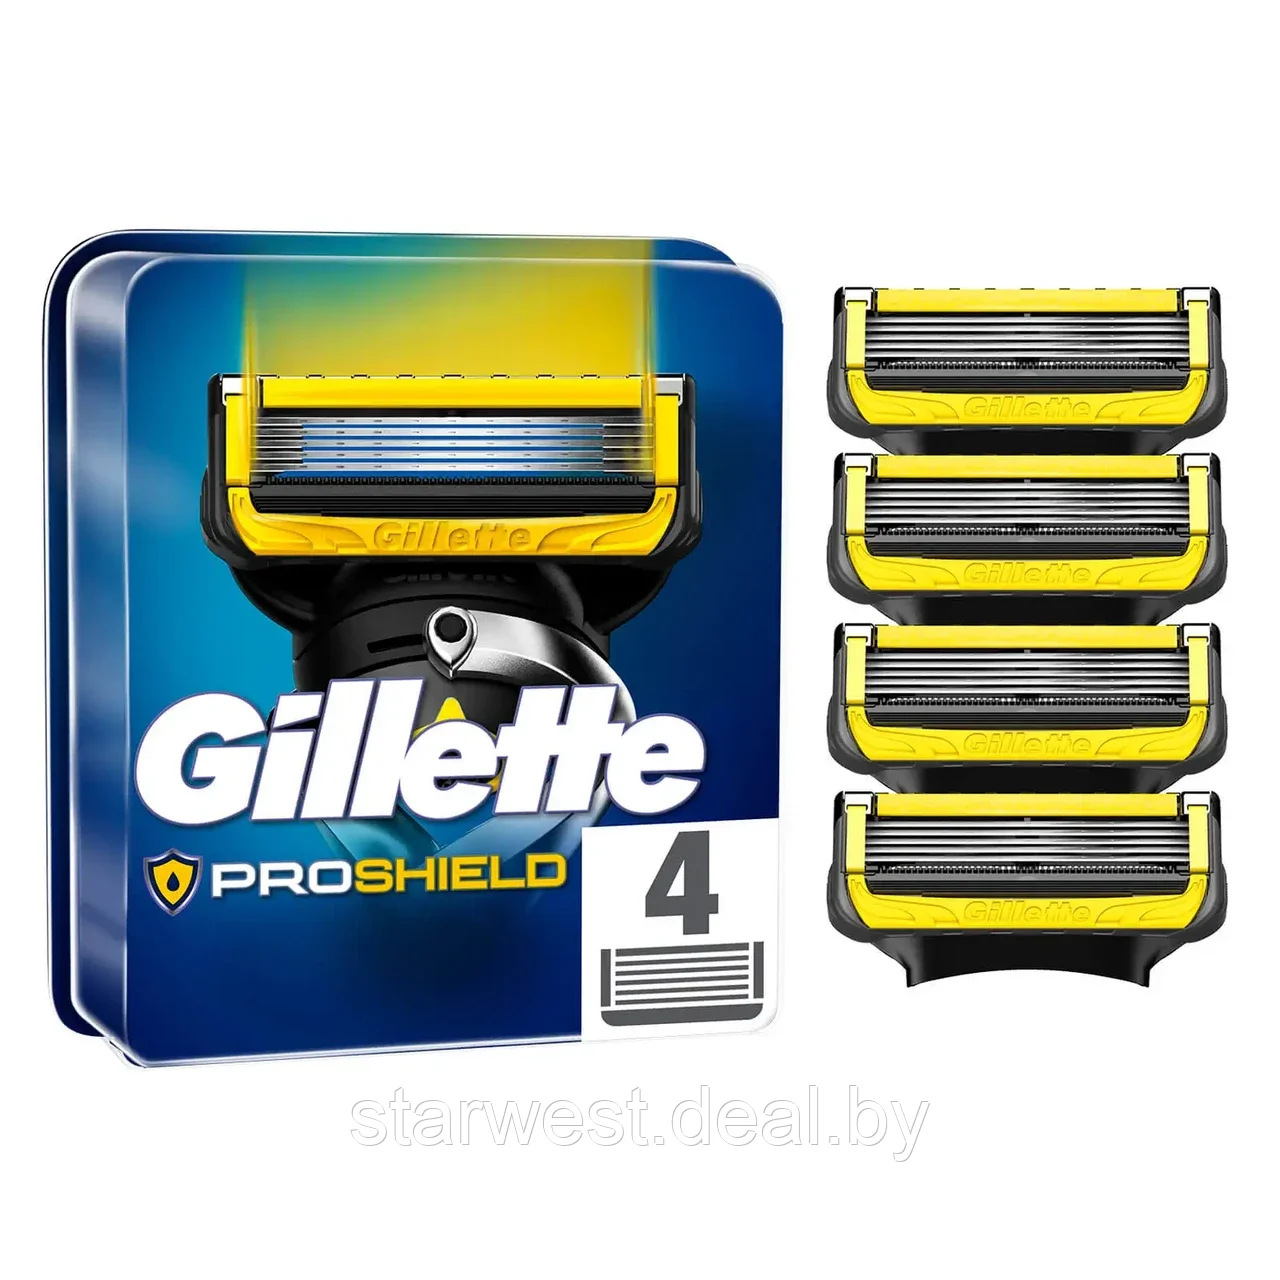 Gillette Fusion 5 Proshield 4 шт. Мужские сменные кассеты / лезвия для бритья